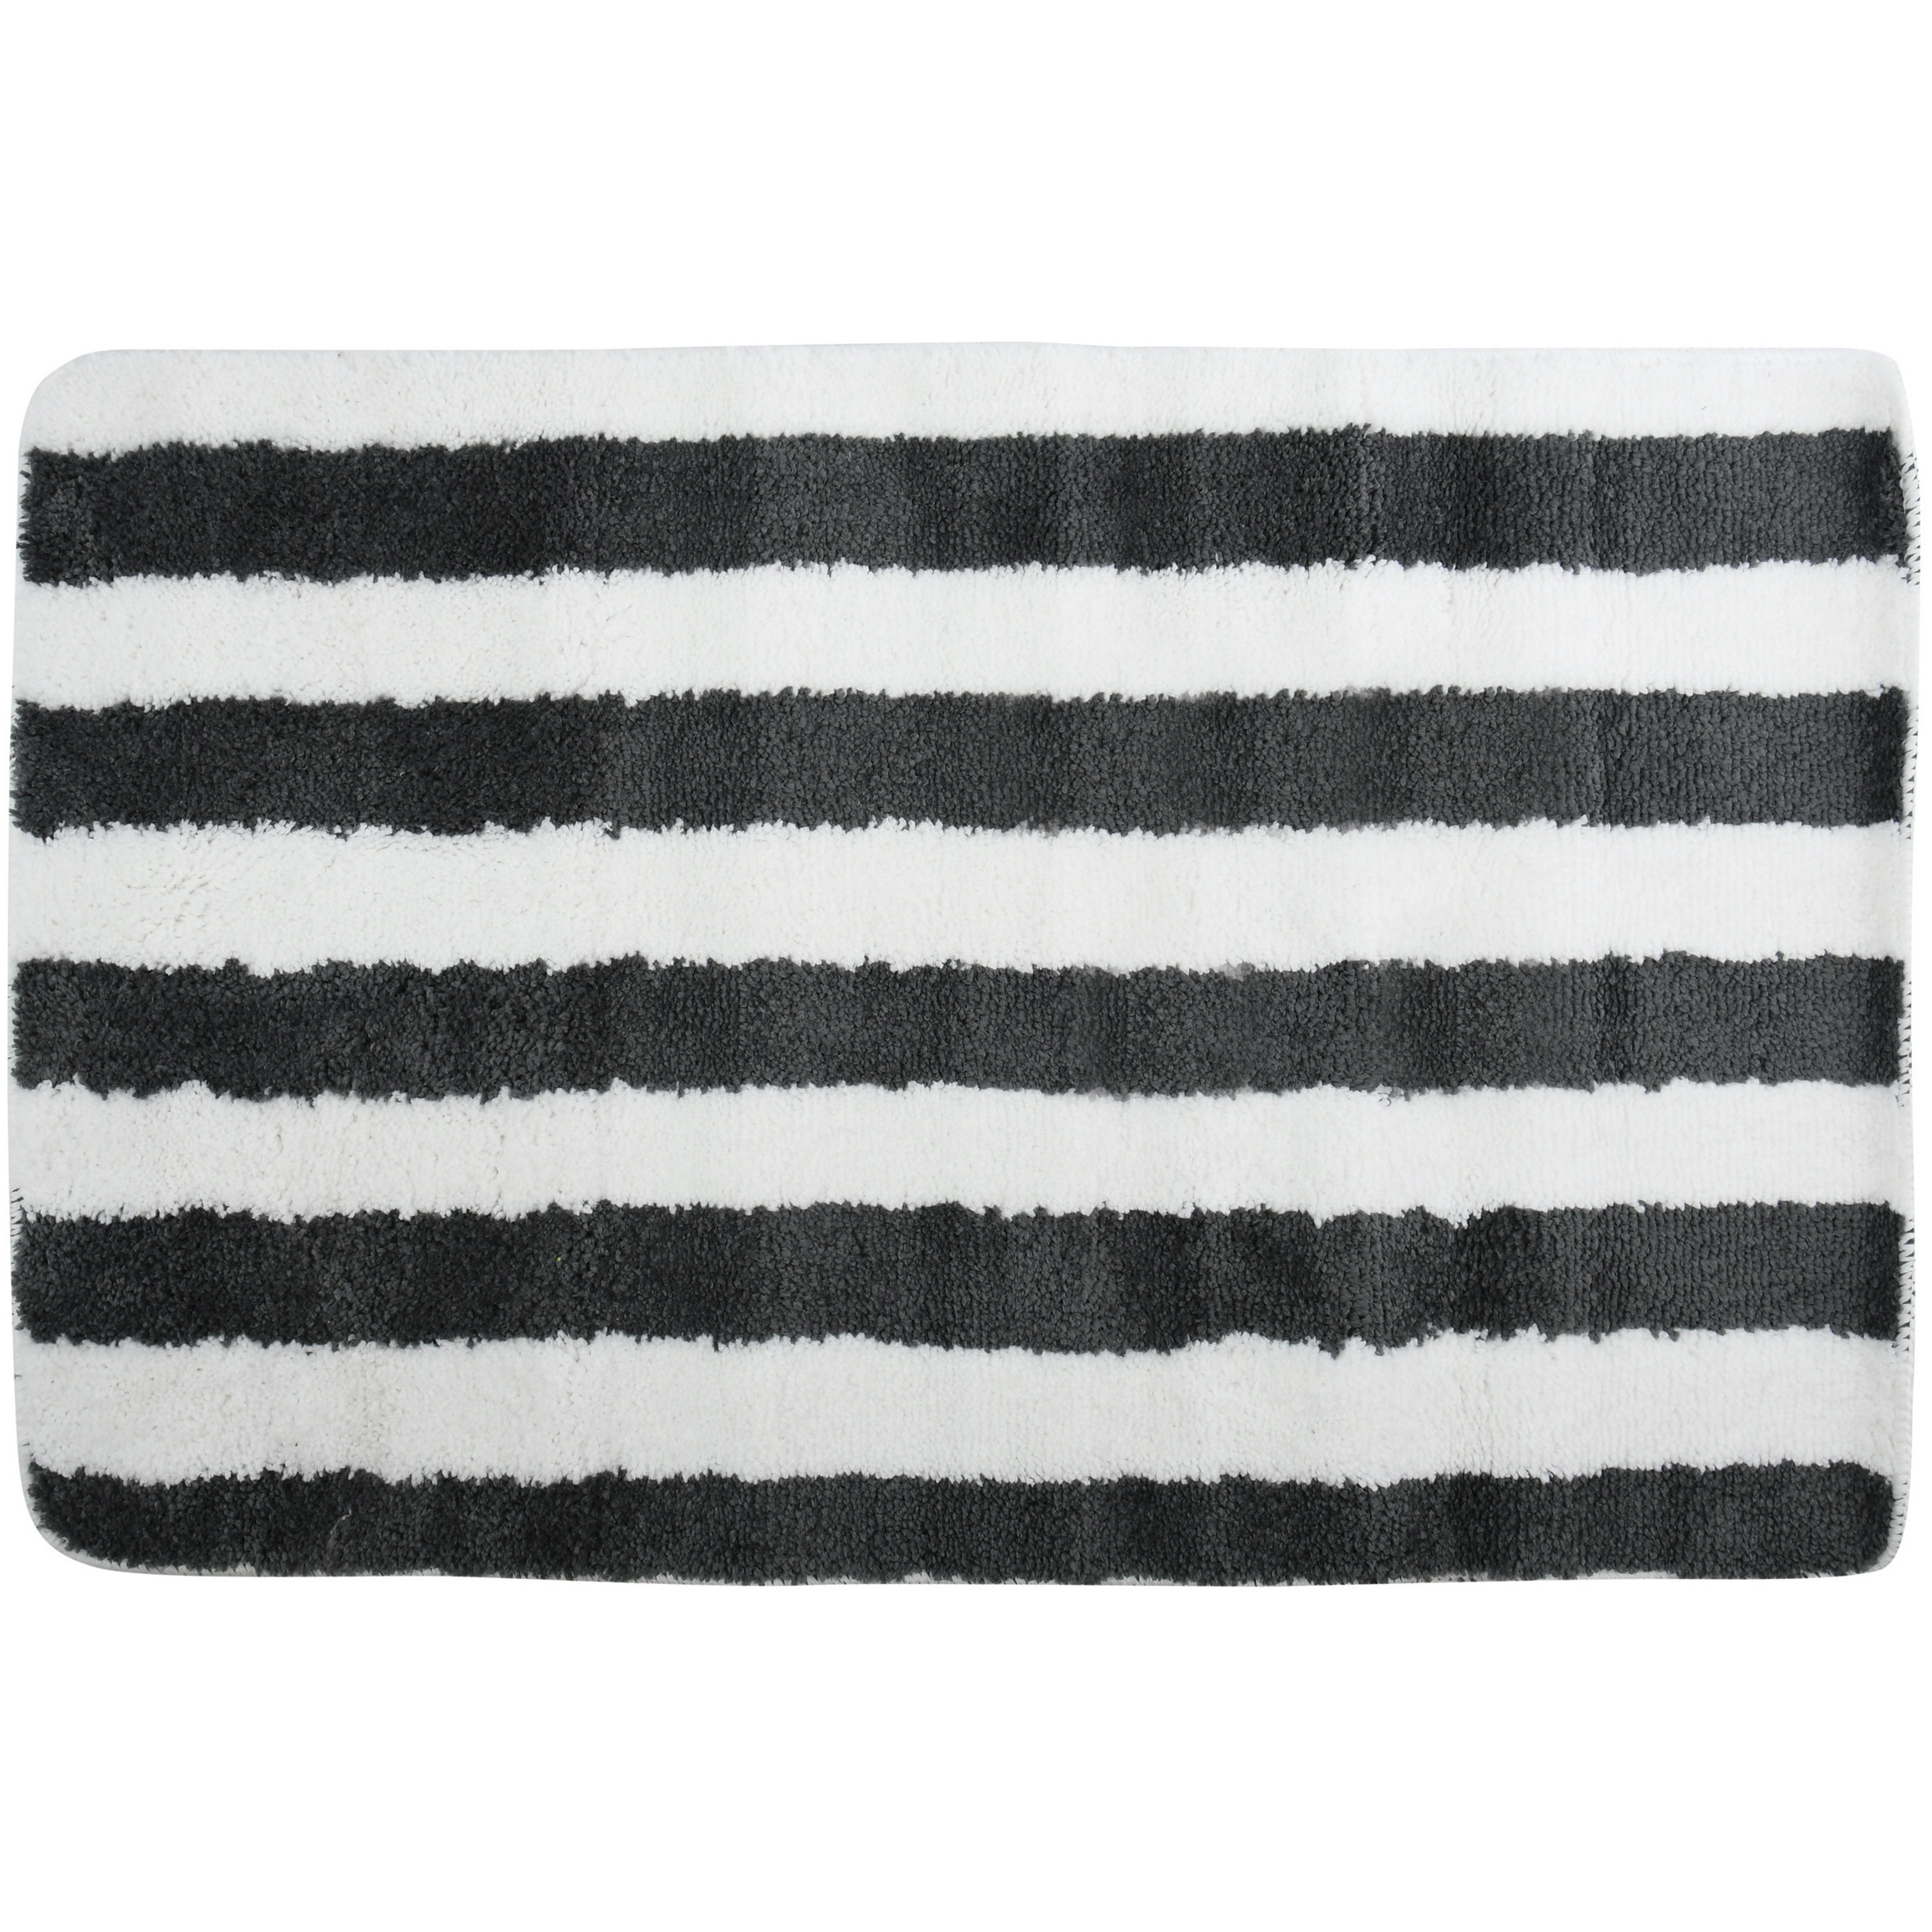 MSV Badkamerkleed-badmat kleedje voor op de vloer zwart-wit 50 x 80 cm Microvezel